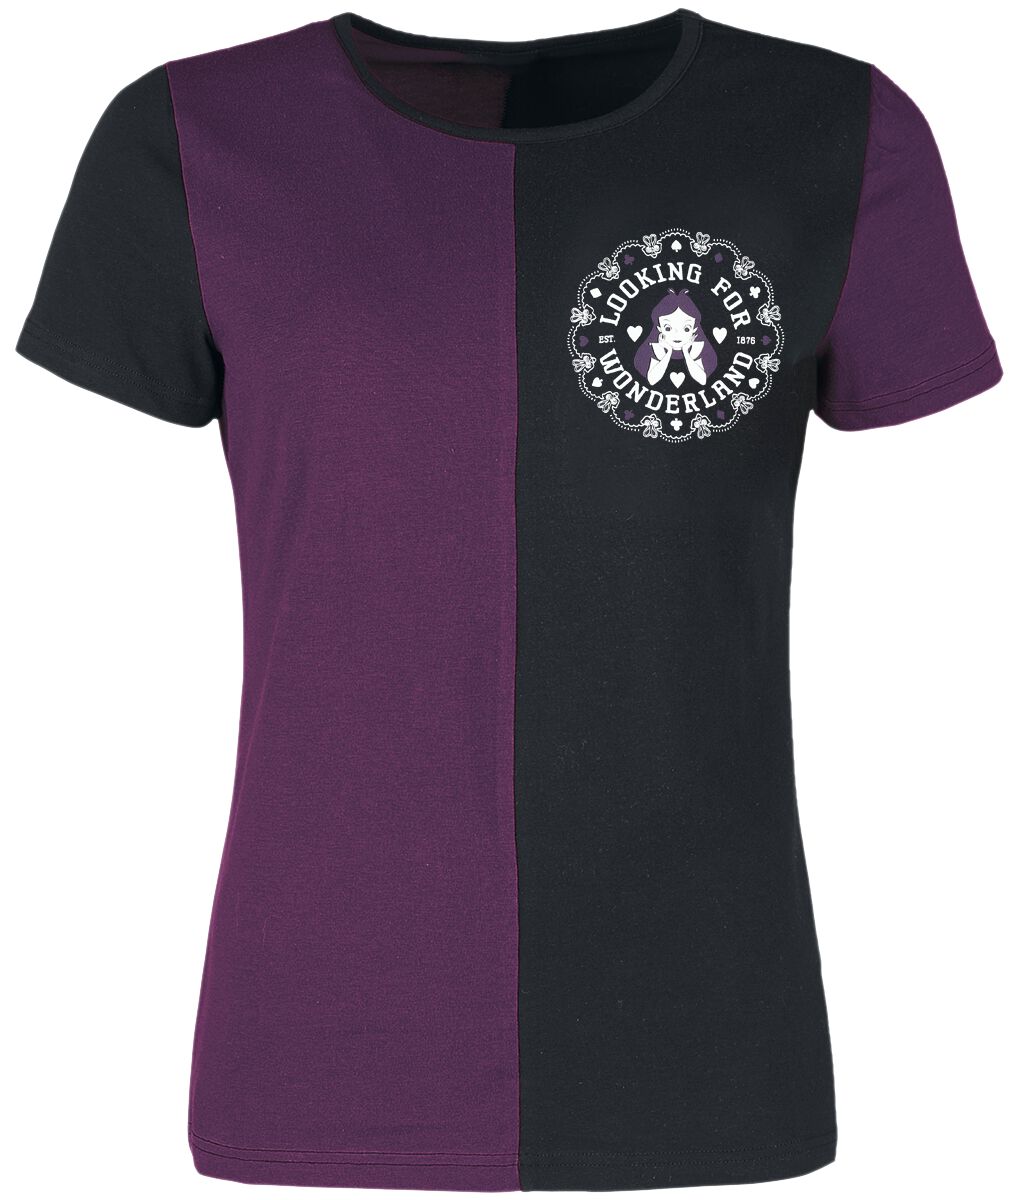 Alice im Wunderland - Disney T-Shirt - University - S bis L - für Damen - Größe S - lila/schwarz  - Lizenzierter Fanartikel